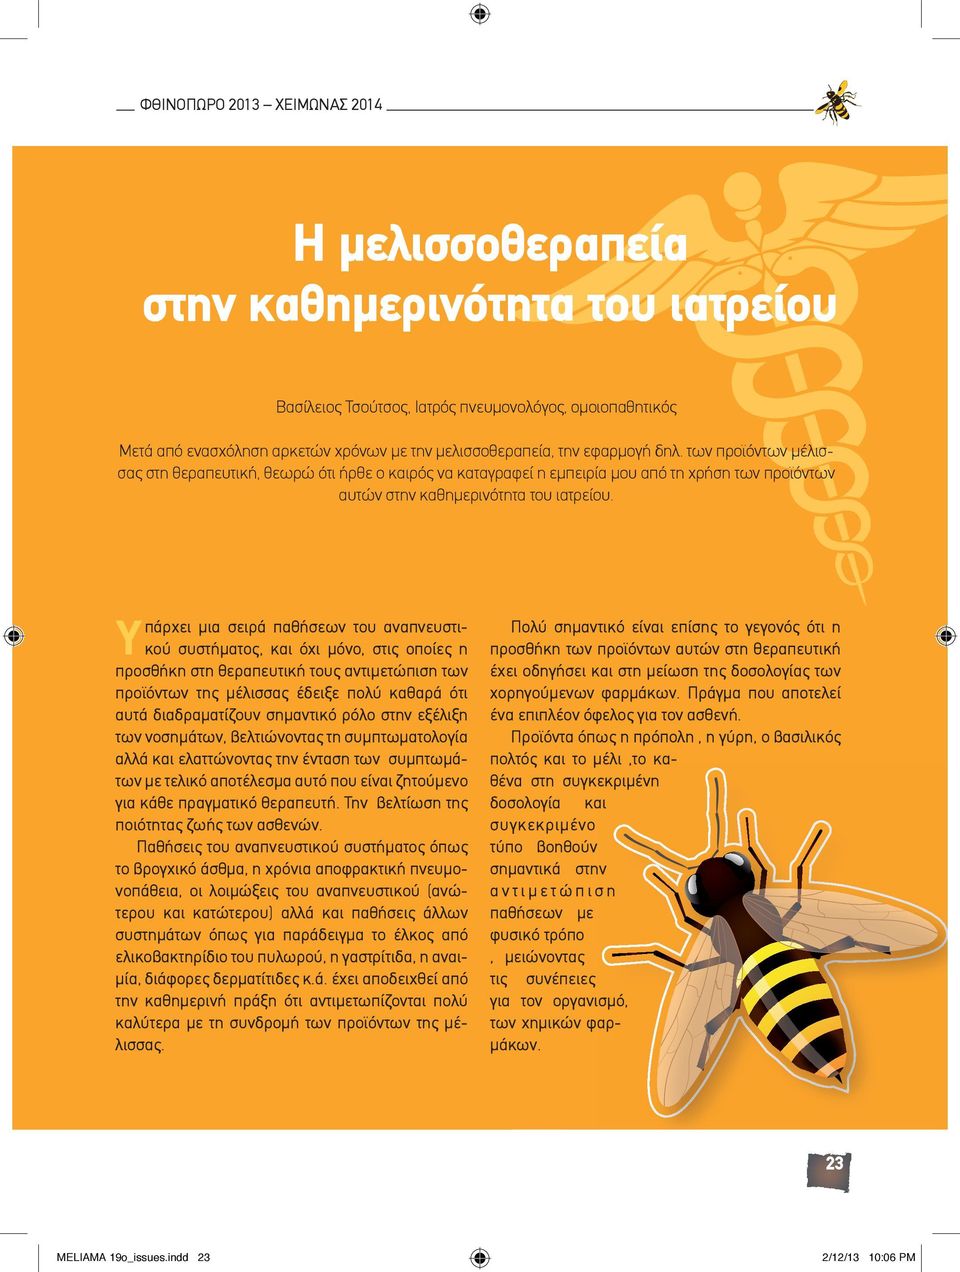 Υπάρχει μια σειρά παθήσεων του αναπνευστικού συστήματος, και όχι μόνο, στις οποίες η προσθήκη στη θεραπευτική τους αντιμετώπιση των προϊόντων της μέλισσας έδειξε πολύ καθαρά ότι αυτά διαδραματίζουν